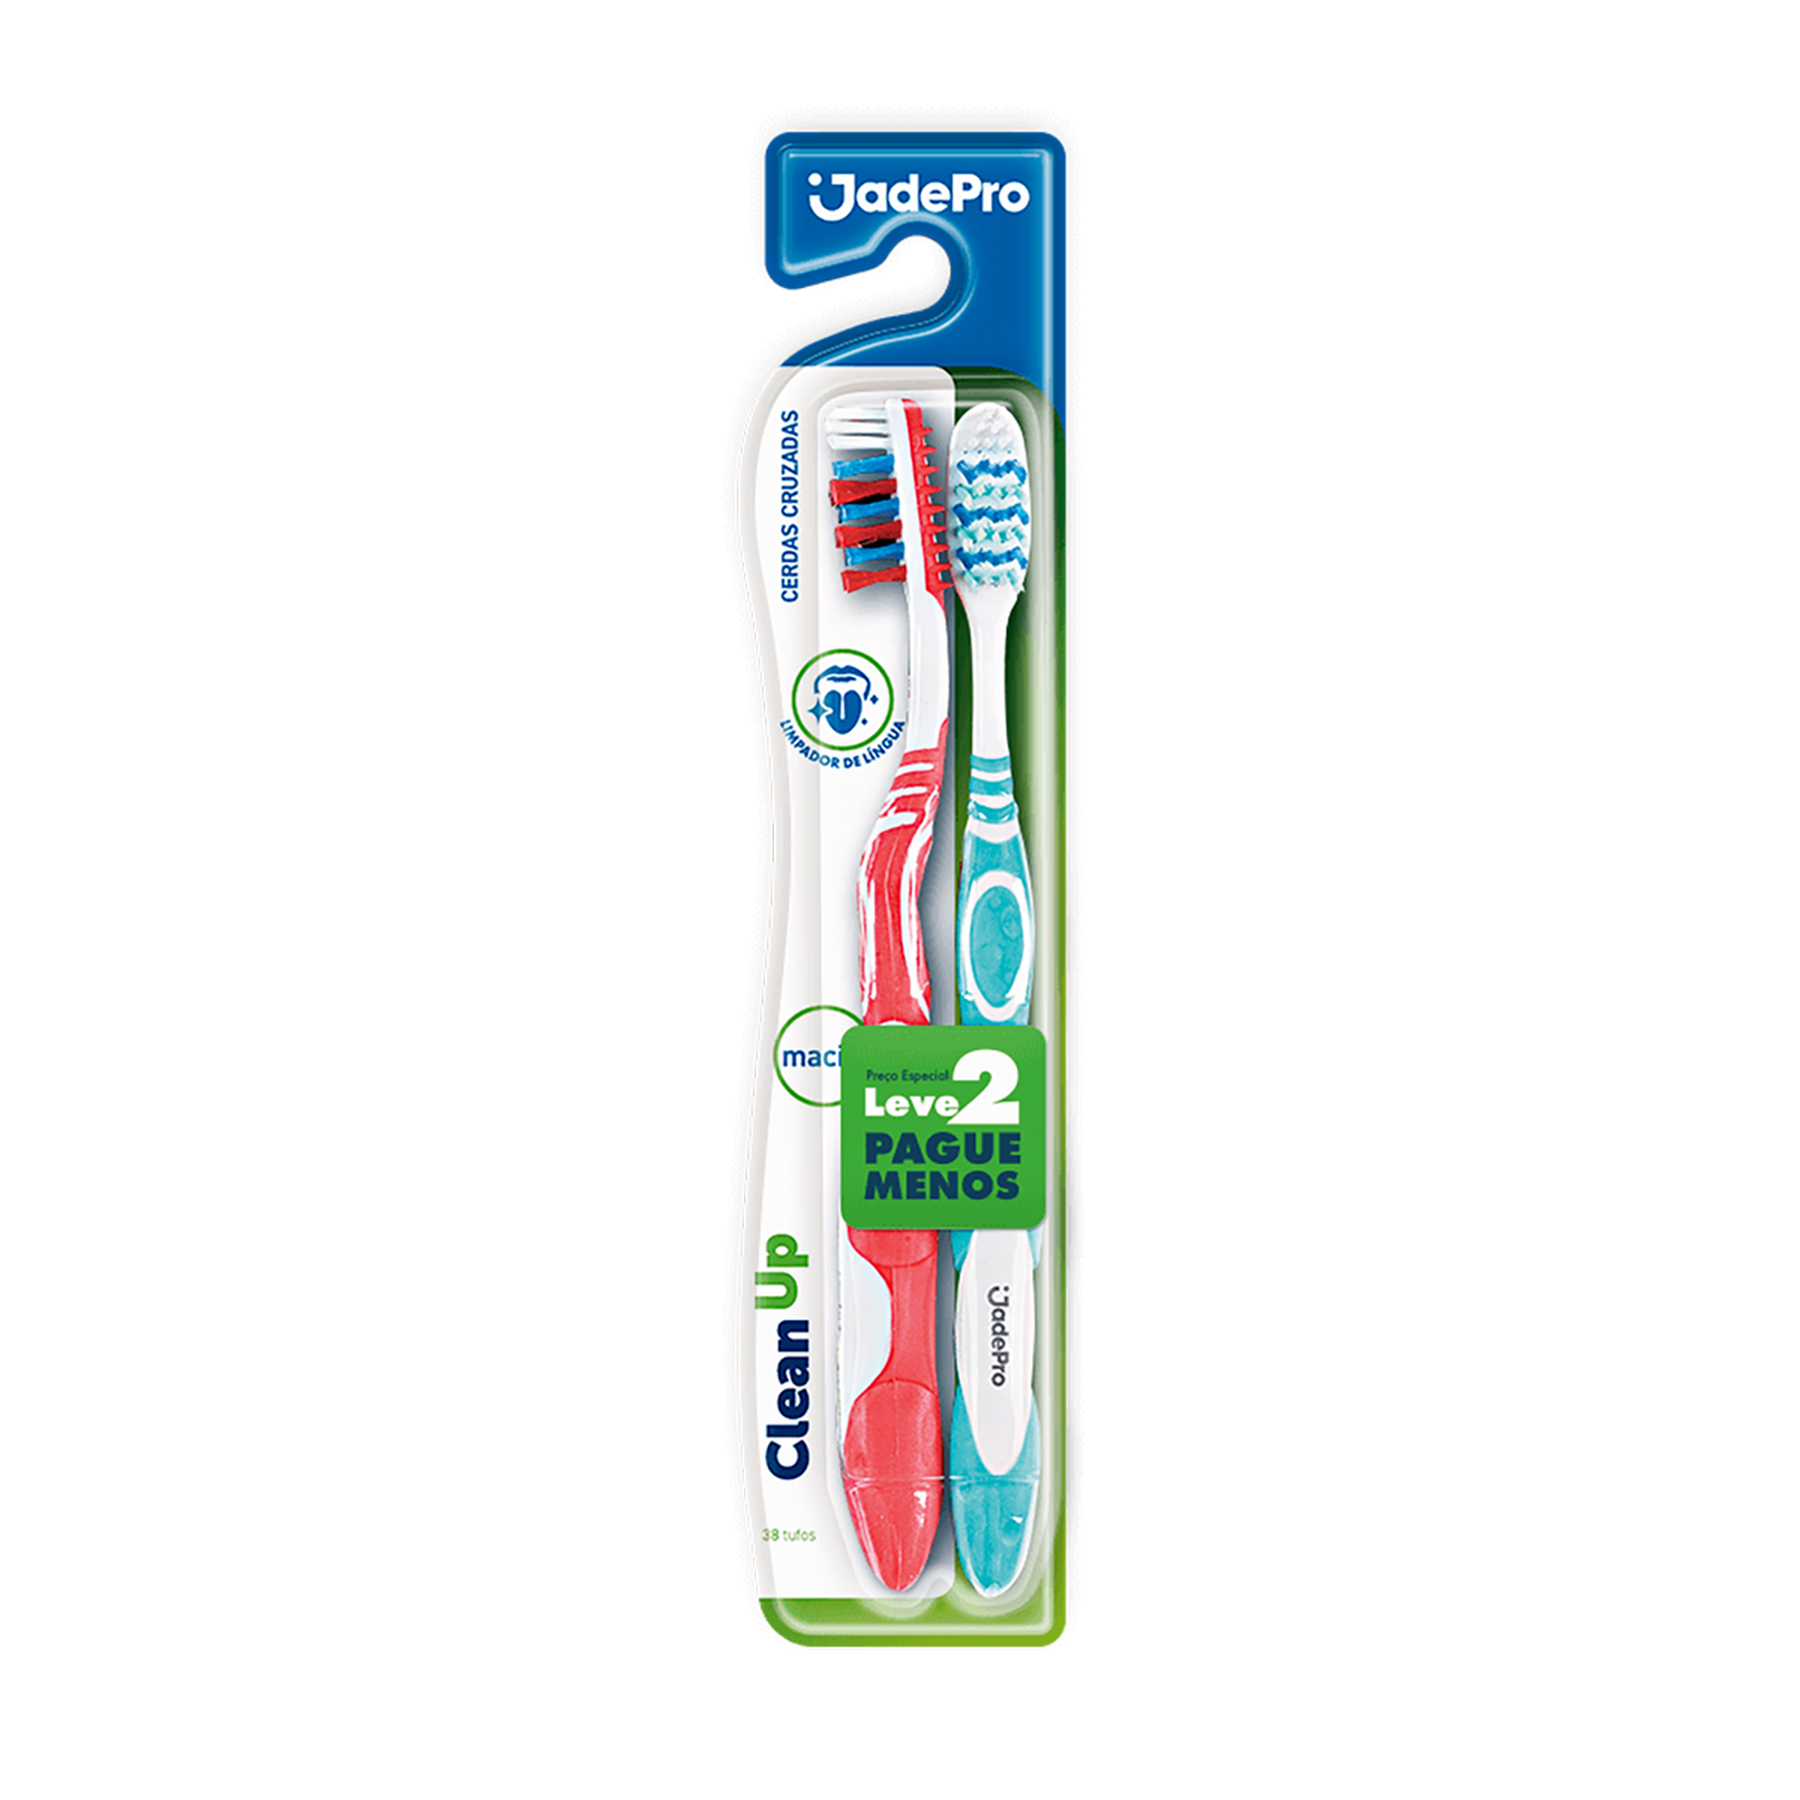 Escova Dental Clean Up 709 Jadefrog - Embalagem Leve 2 Pague 1